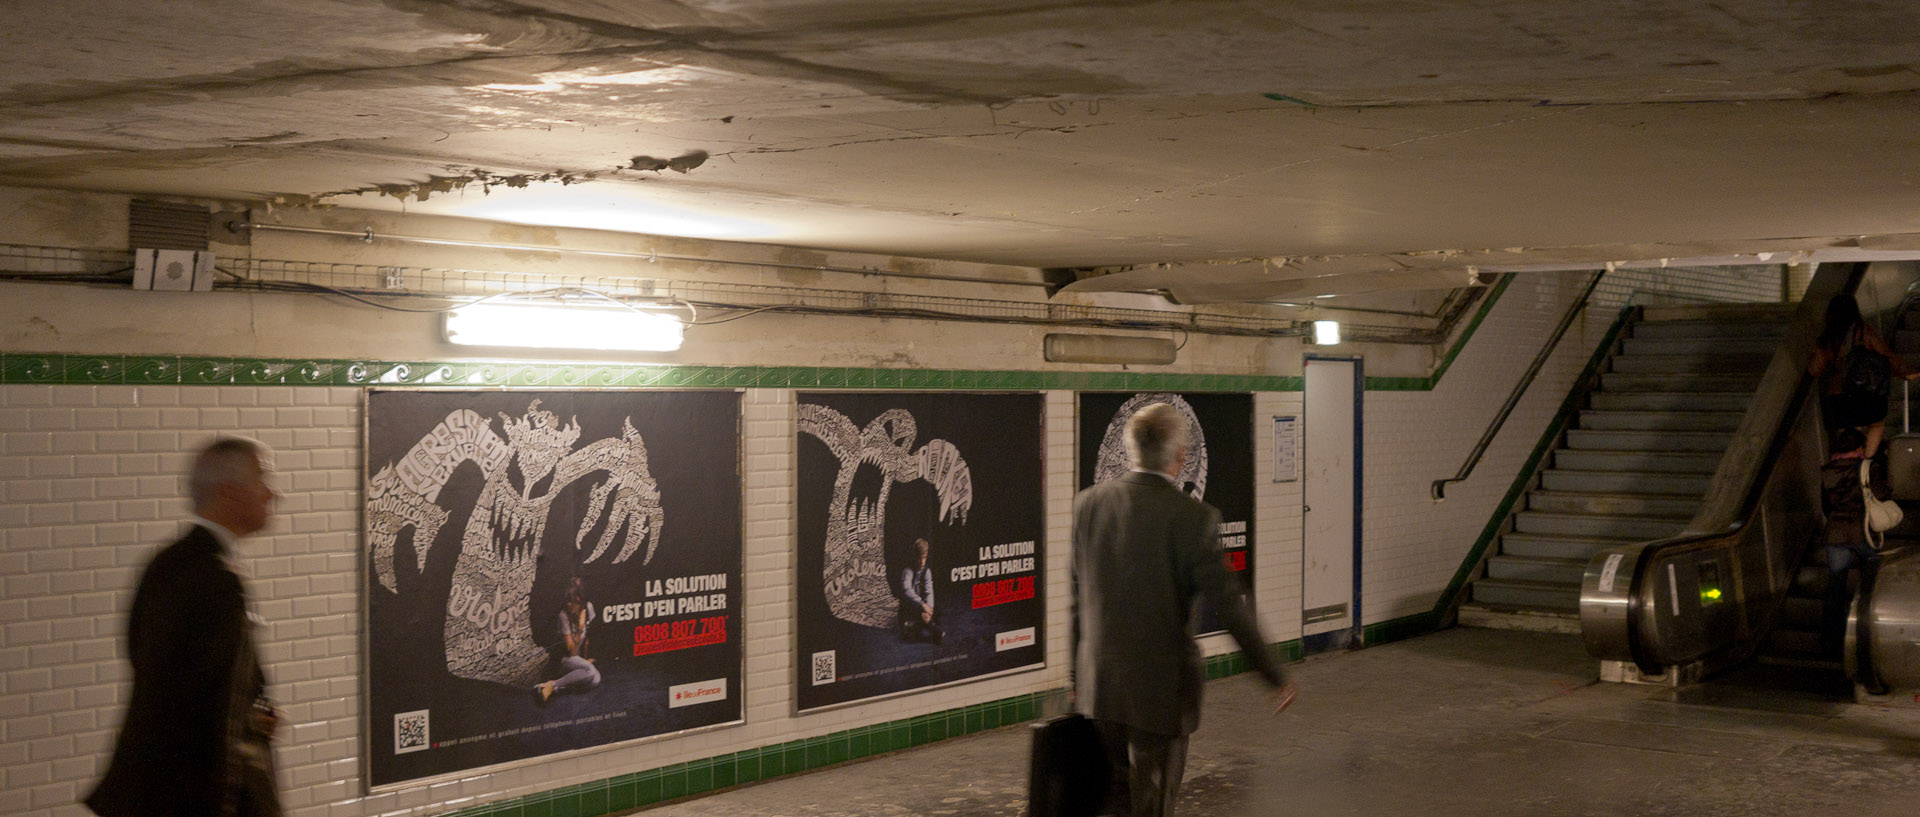 La station de métro Saint-Lazare en travaux, à Paris.